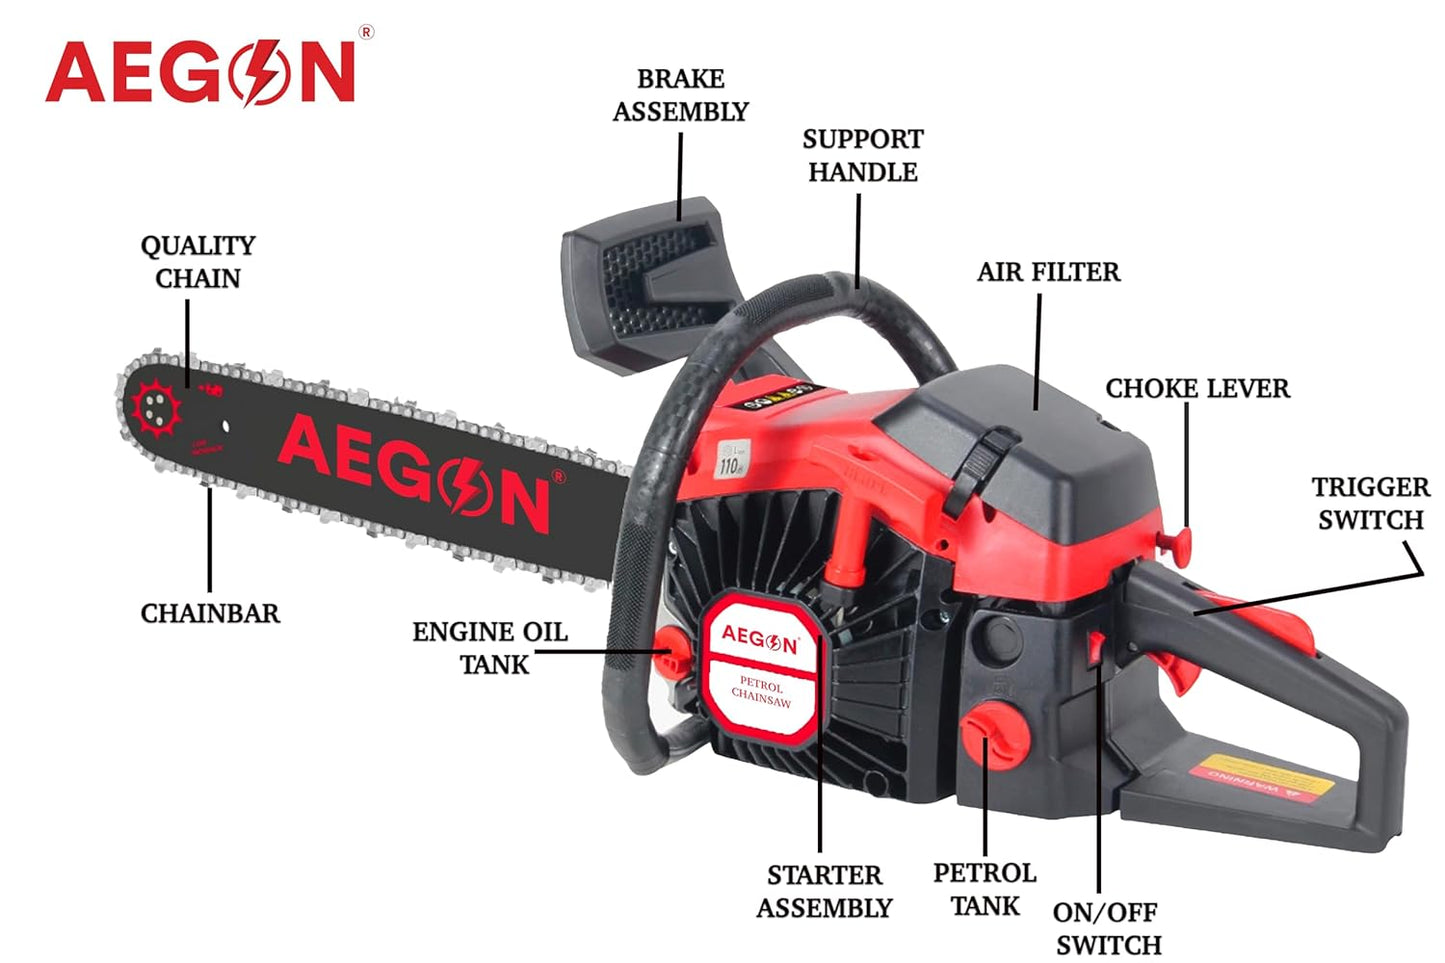 Aegon 63CC 22-Inch Petrol Chainsaw: Heavy-Duty Woodcutting Saw for Farm, Garden, and Ranch